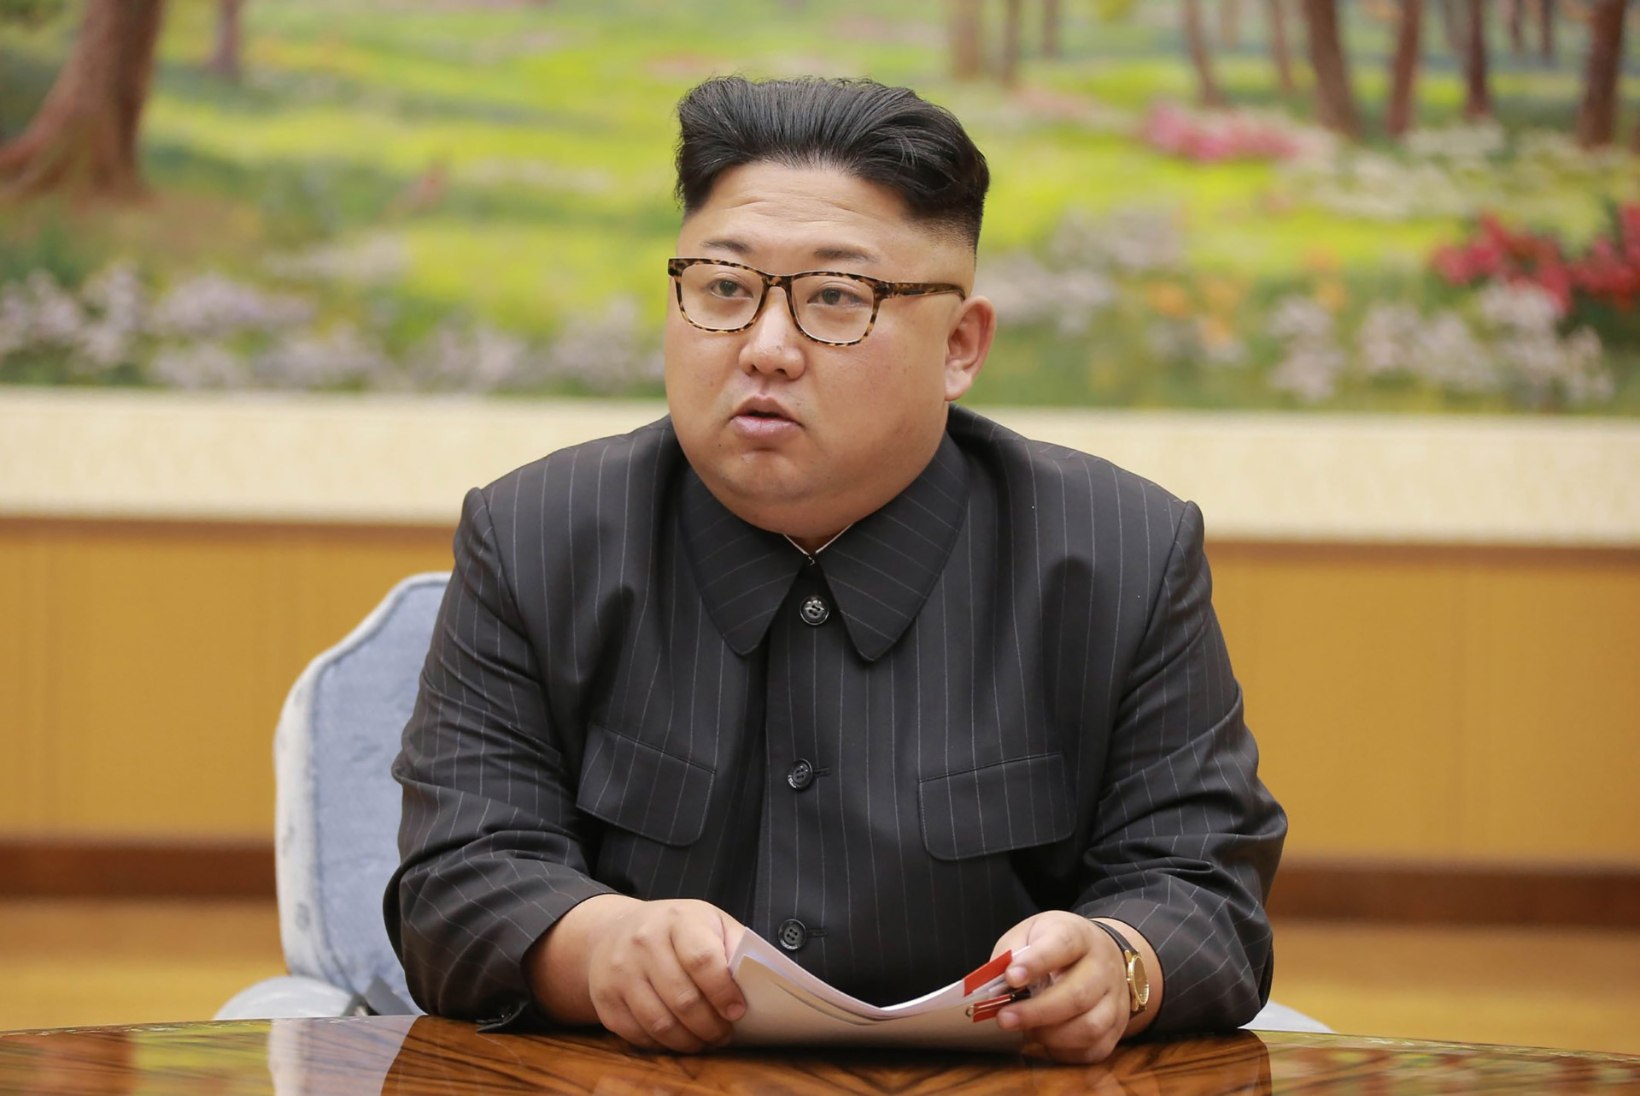 Mis jalgpallimeeskonna särgis magab Põhja-Korea valitseja Kim Jong-un?